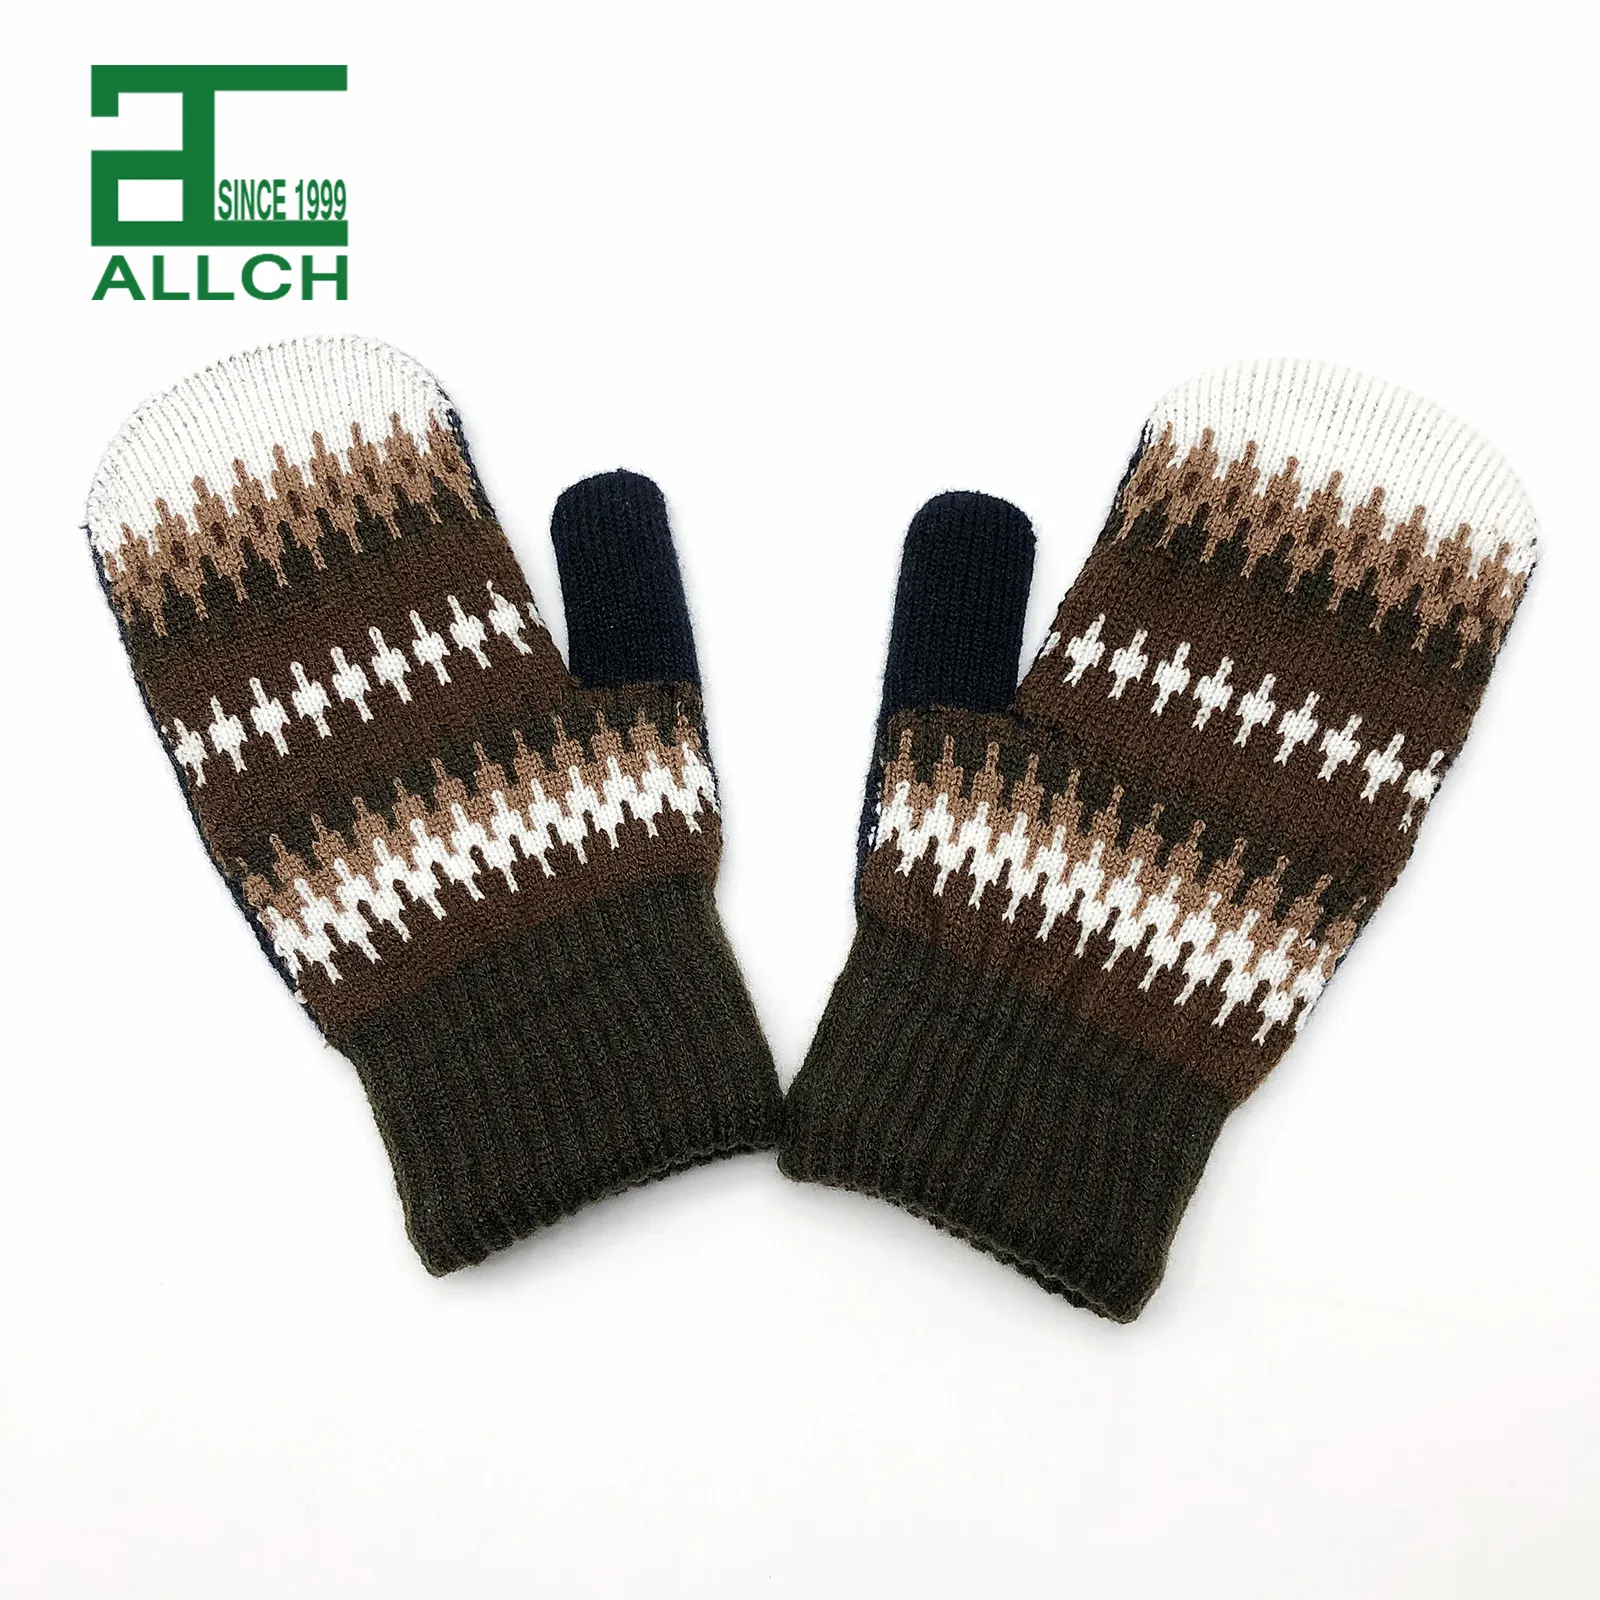 Allch Rts Unisex Recycle Groothandel Winter Warm Nieuwe Mode Jacquard Mitten Custom Thermische Dubbele Laag Handschoenen